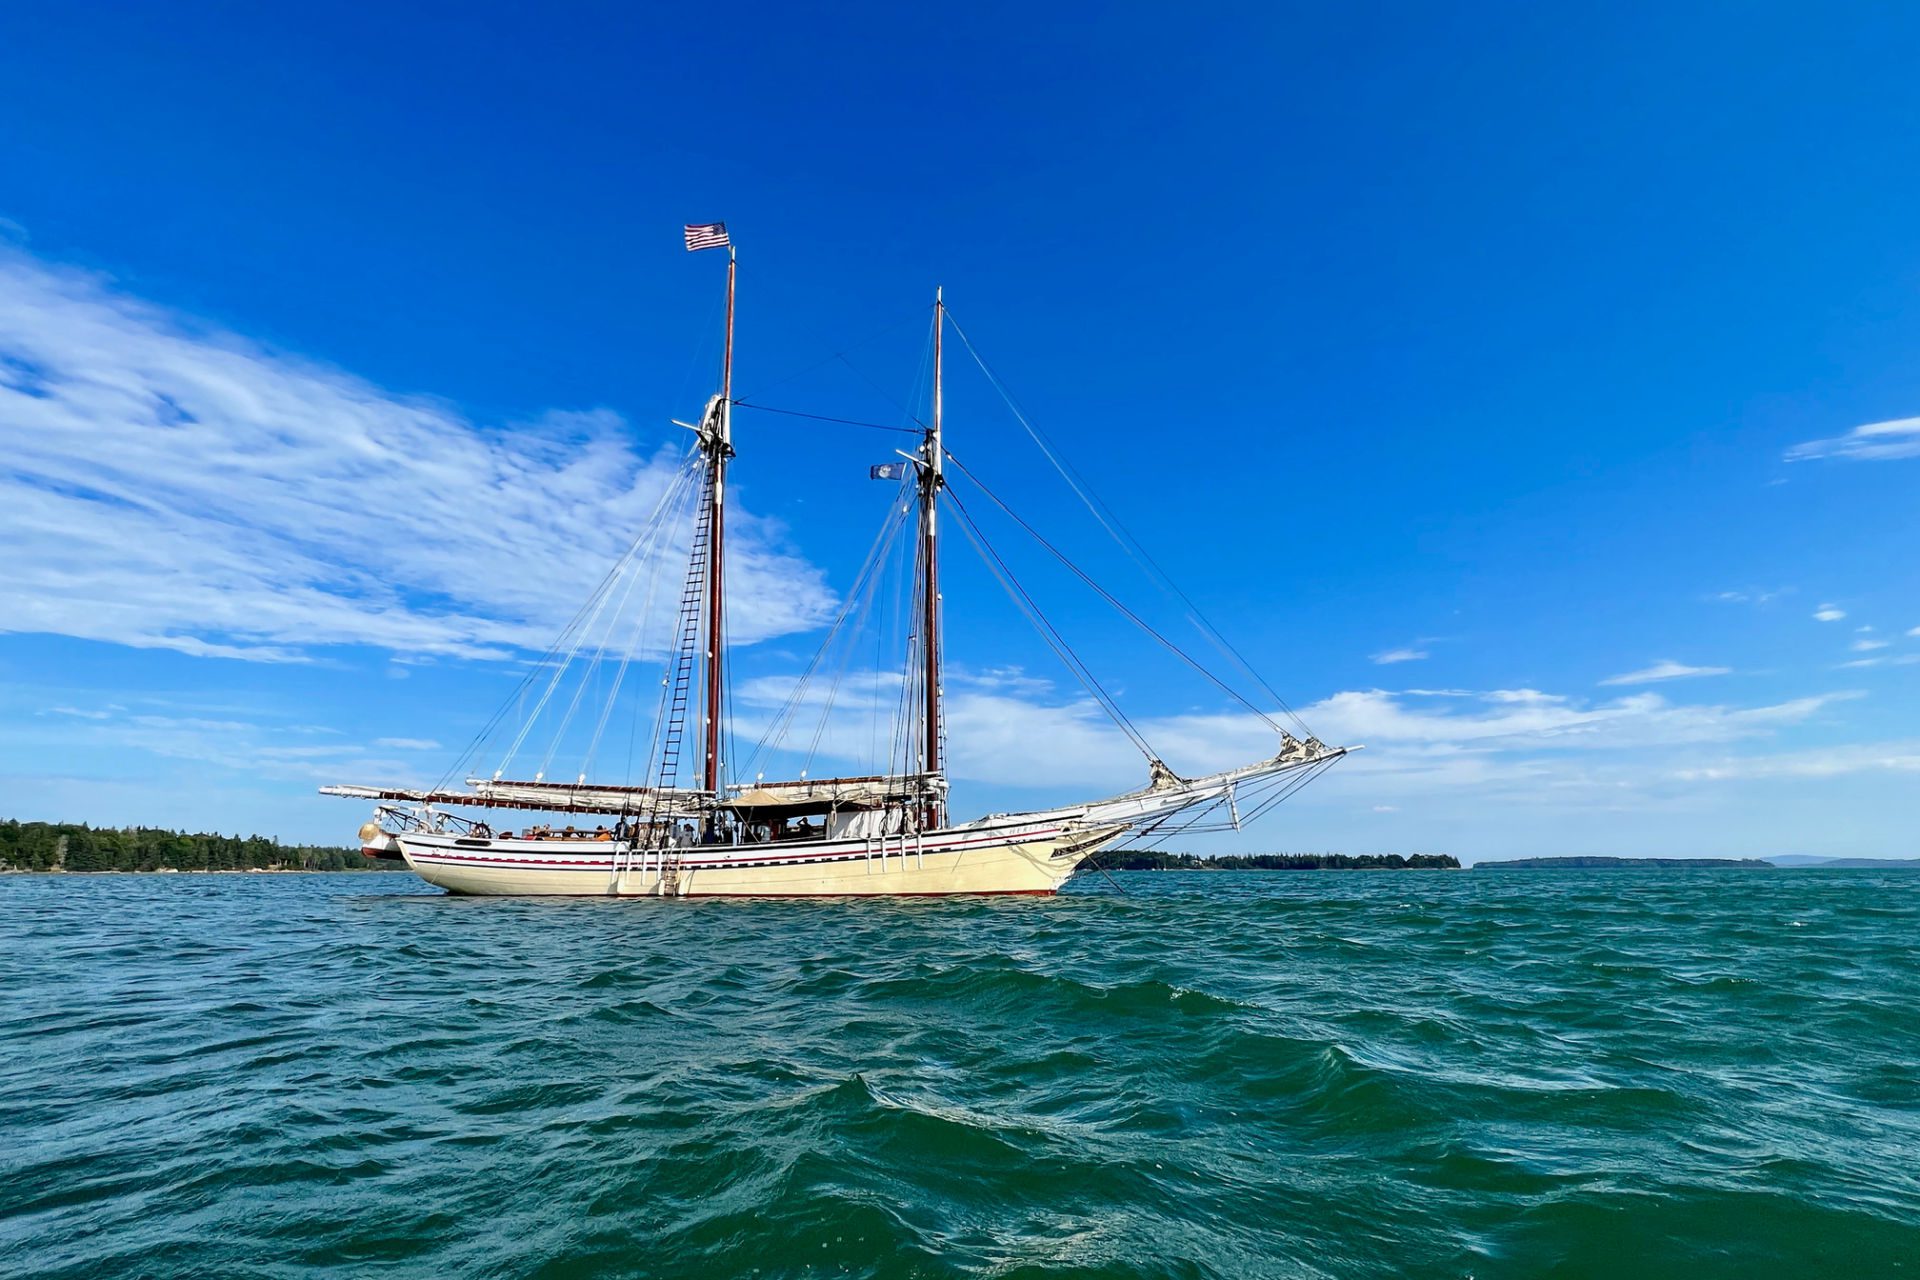 Sailing in Maine on the Schooner Heritage Windjammer